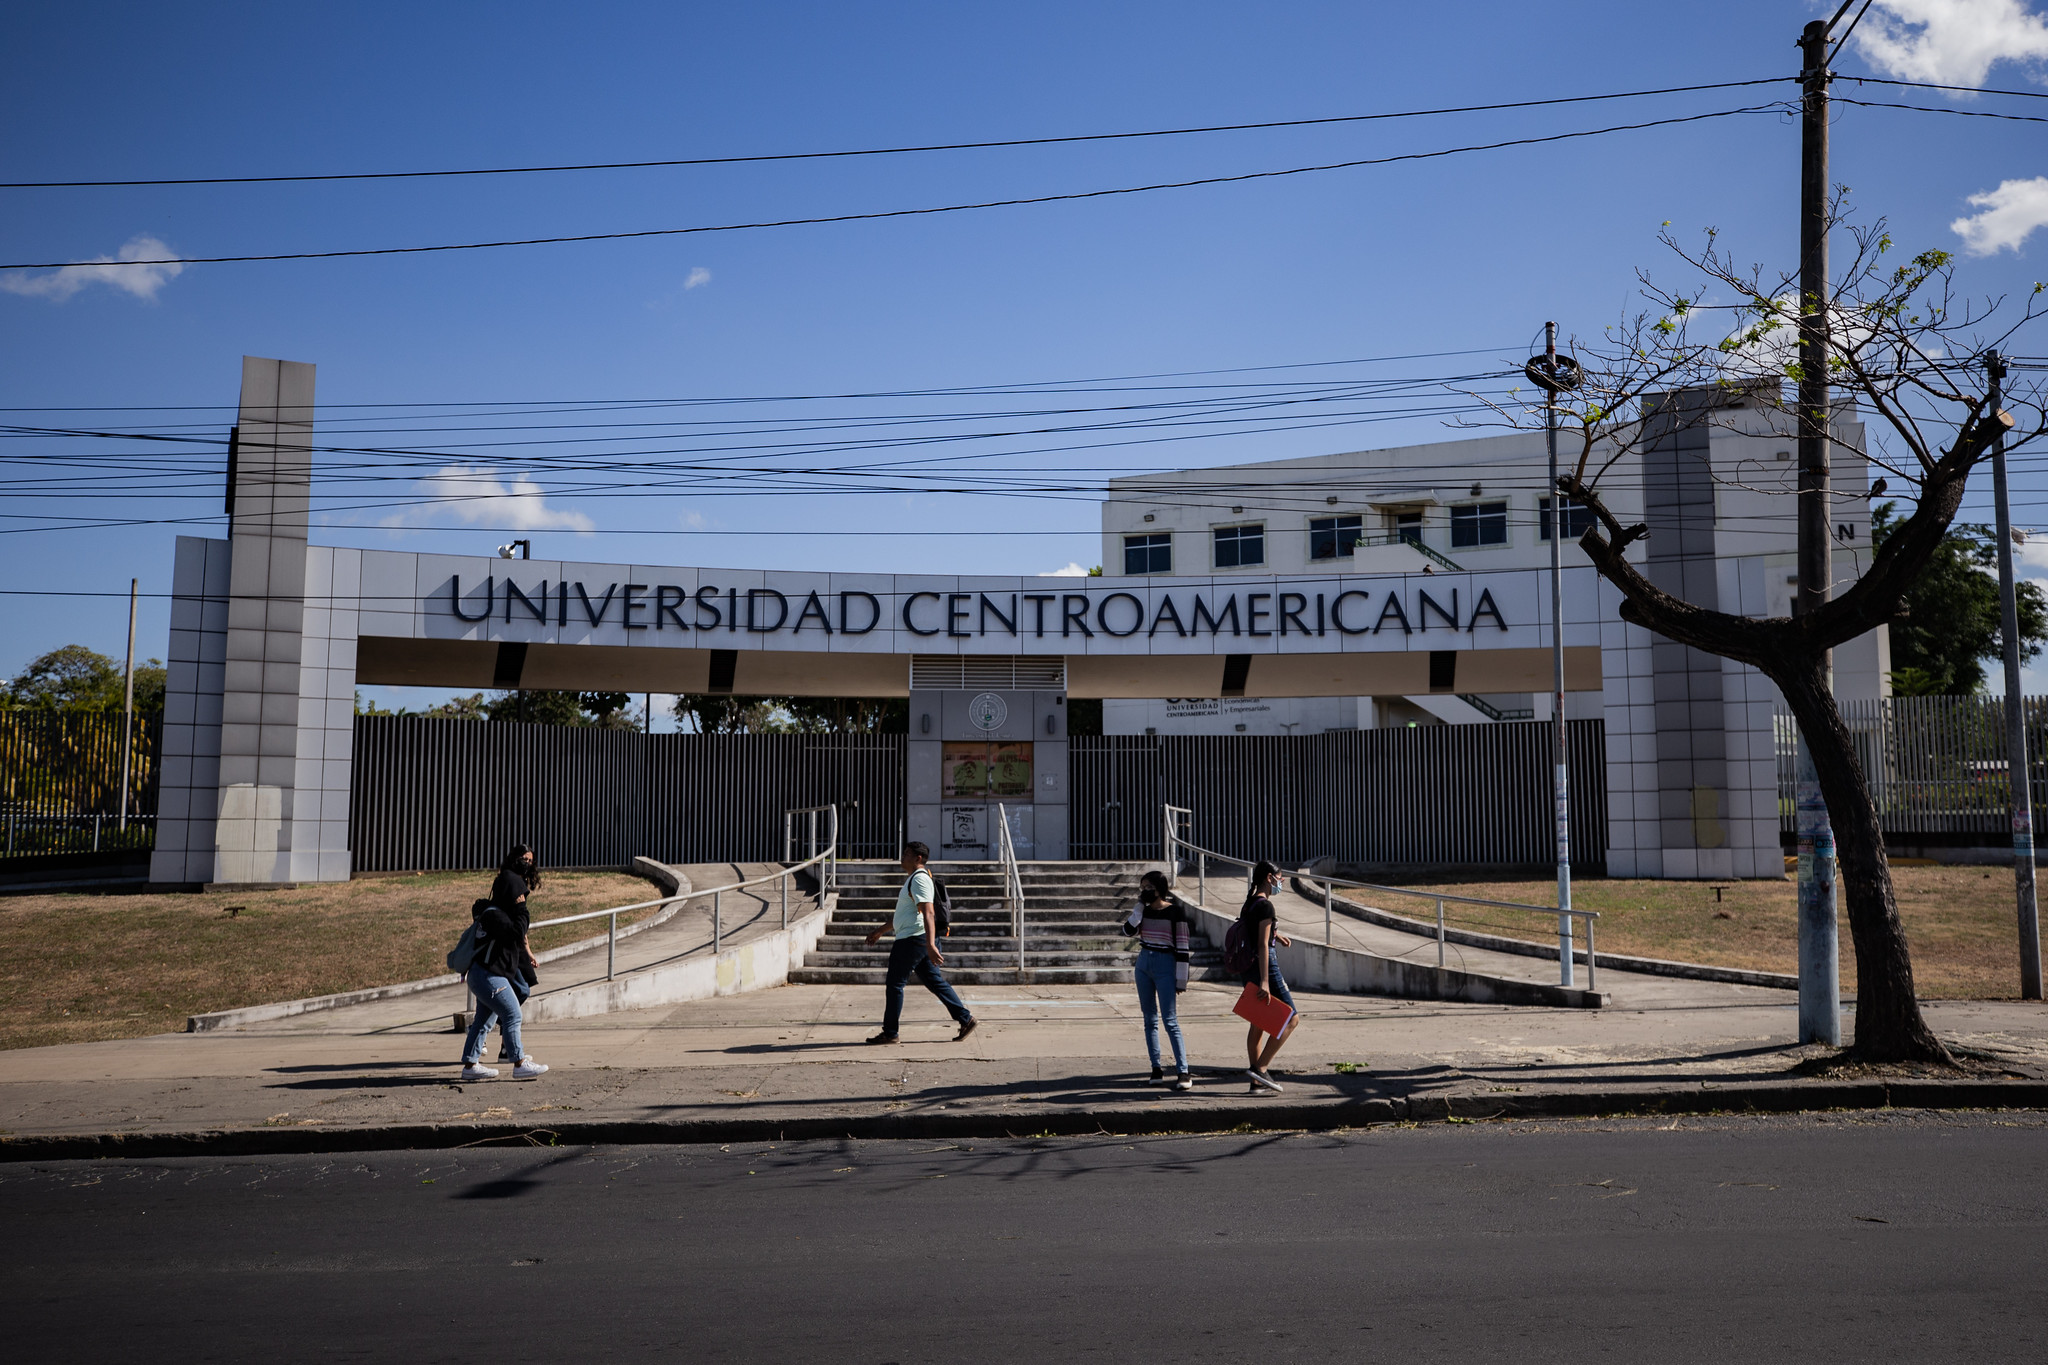 Zarpazo a la educación superior: Ortega entierra la libertad de cátedra